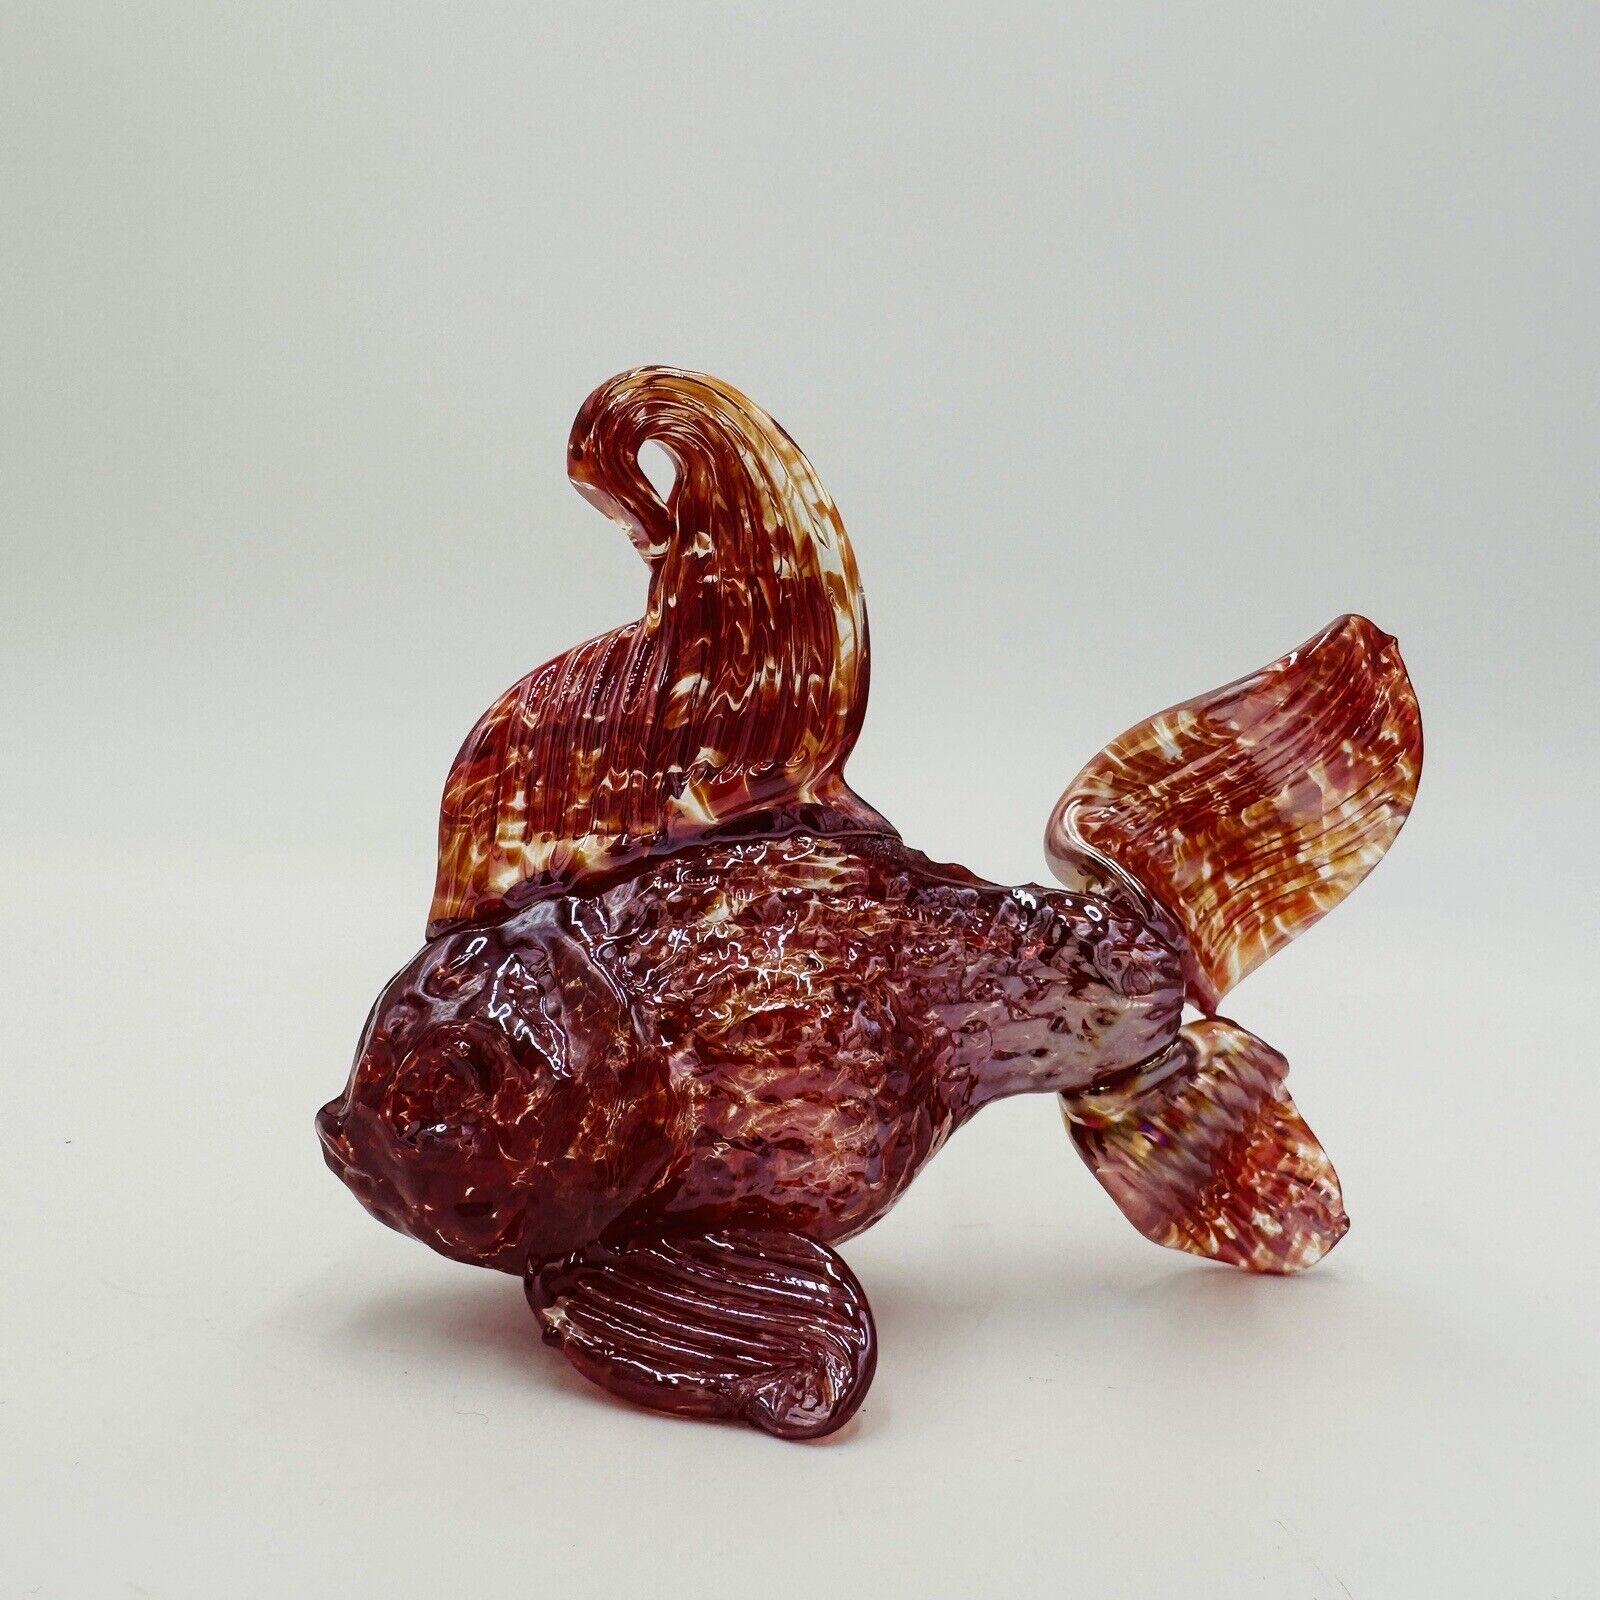 Japanese Goldfish Ryukin Figurine Blown Glass Craft Art Hand Interior Aquatic